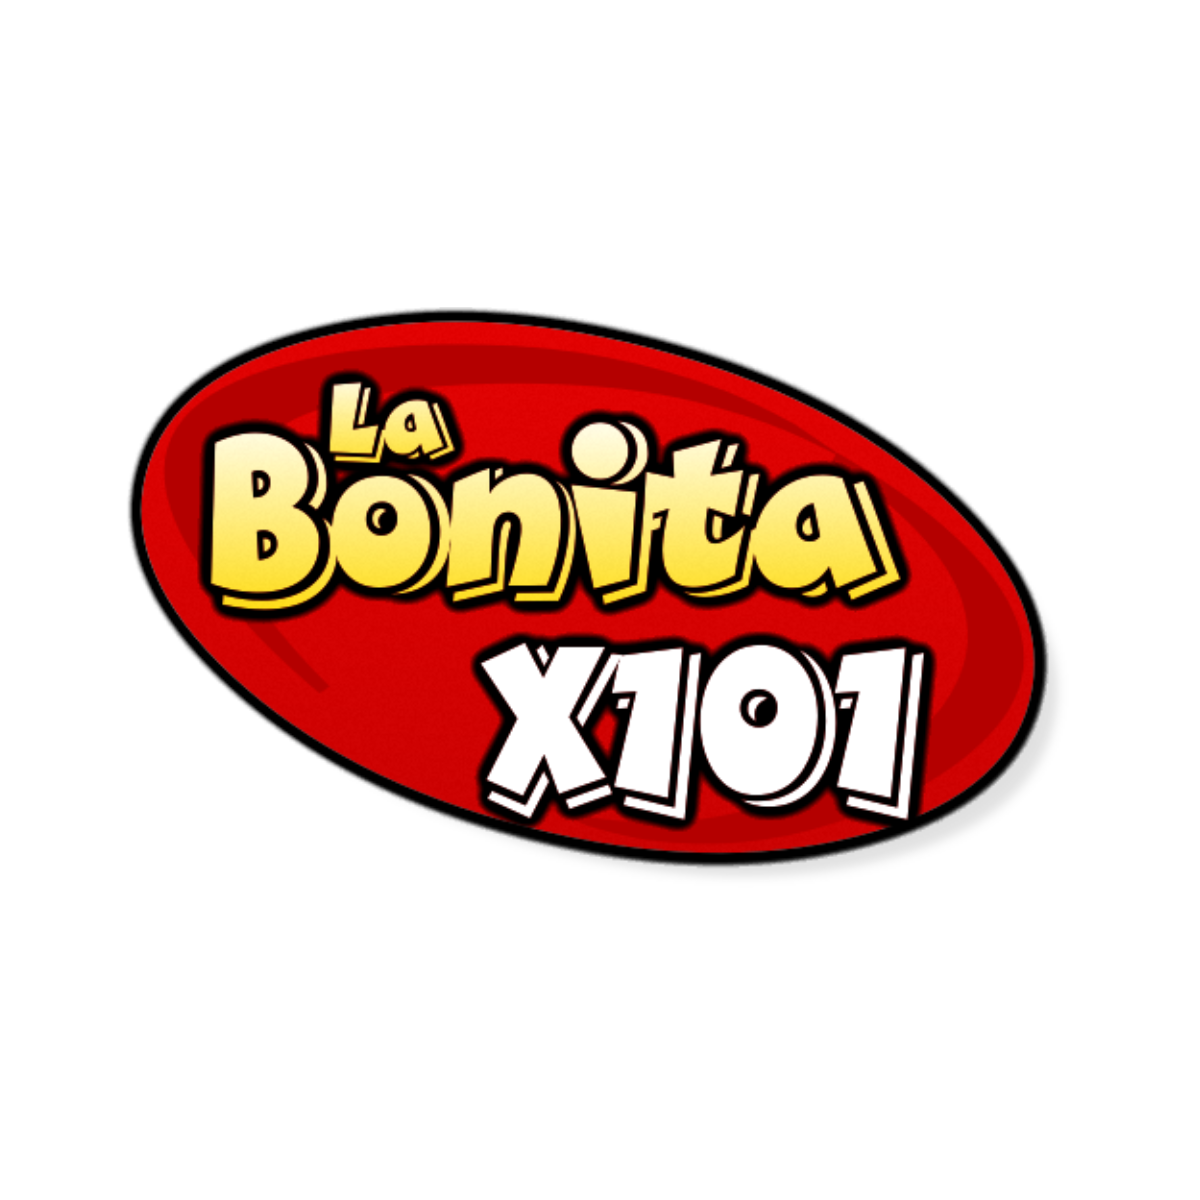 Listen to La Bonita X101